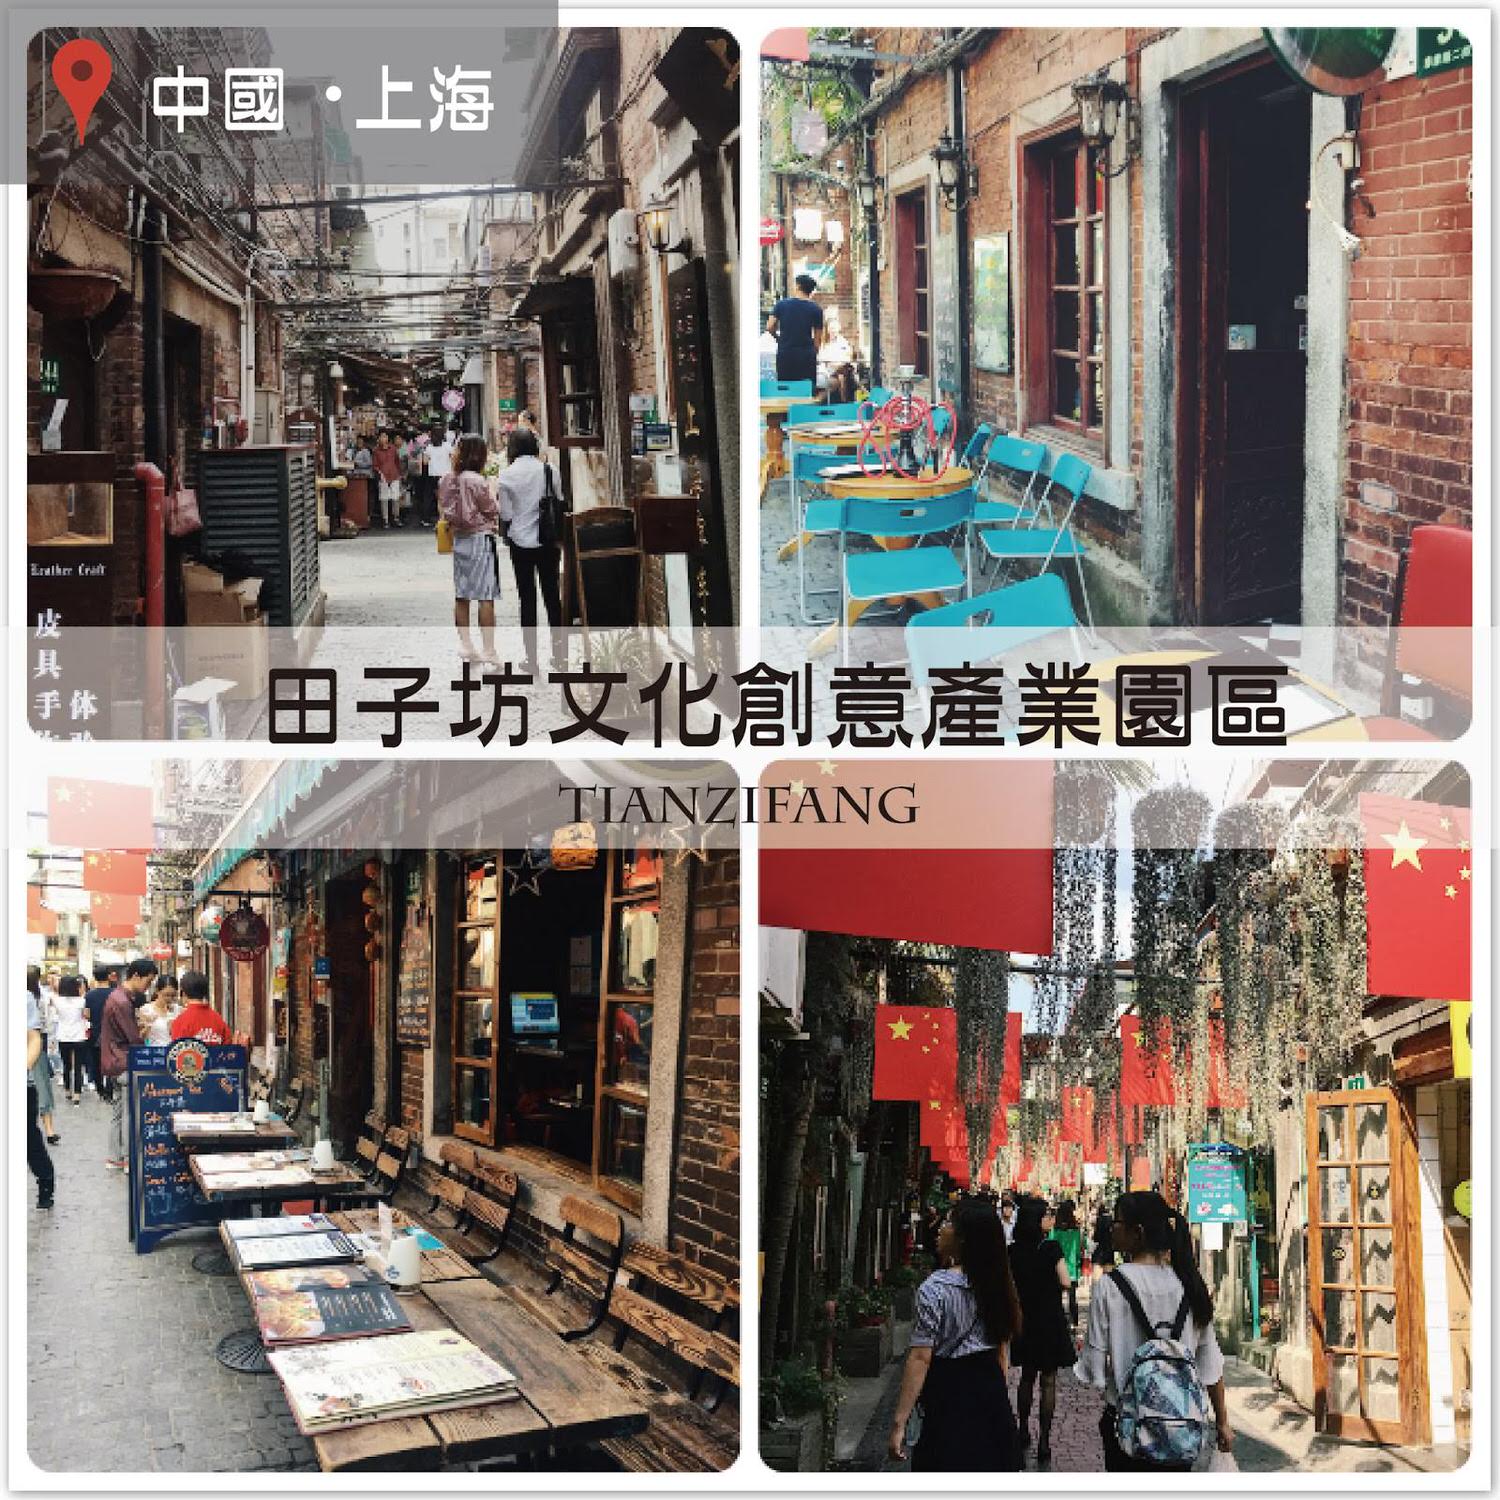 【上海自由行】田子坊文創園區，巷弄裡的藝術文創聚落！交通方式/逛街路線 @莓姬貝利 食事旅行